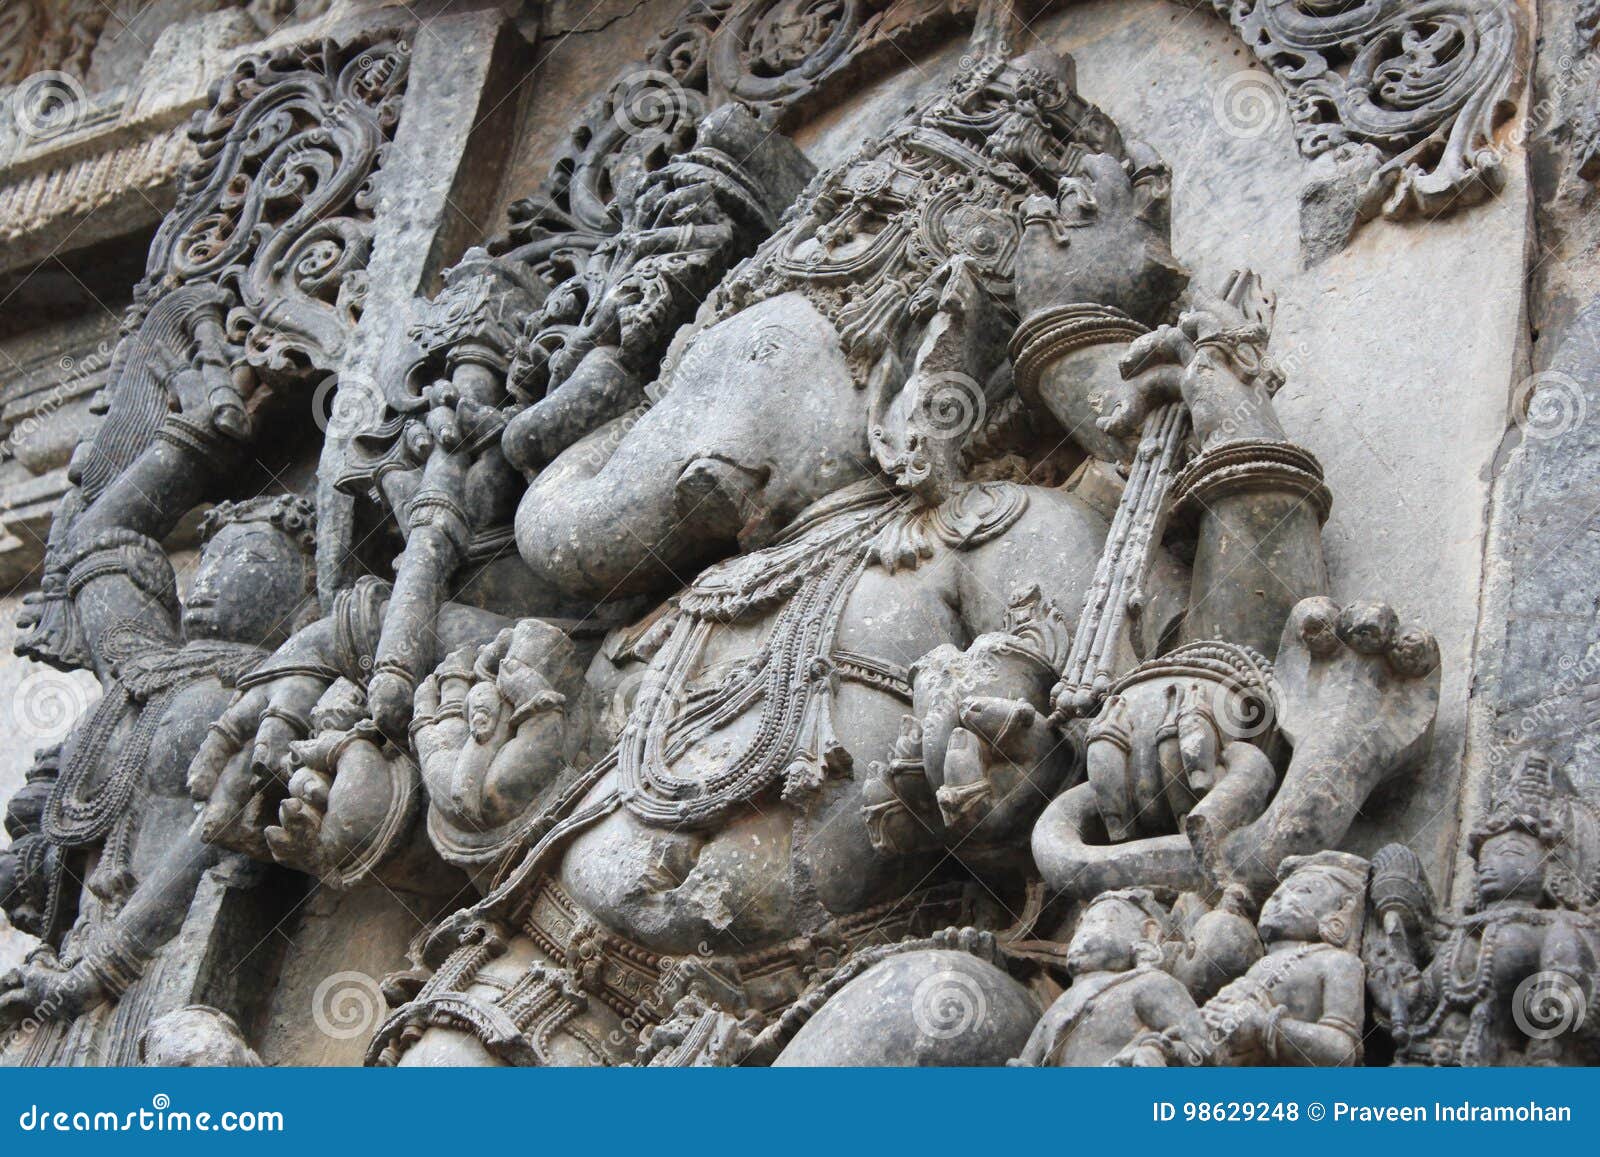 Hoysaleshwara Temple Wall Carving of Valampuri Vinayagar ...